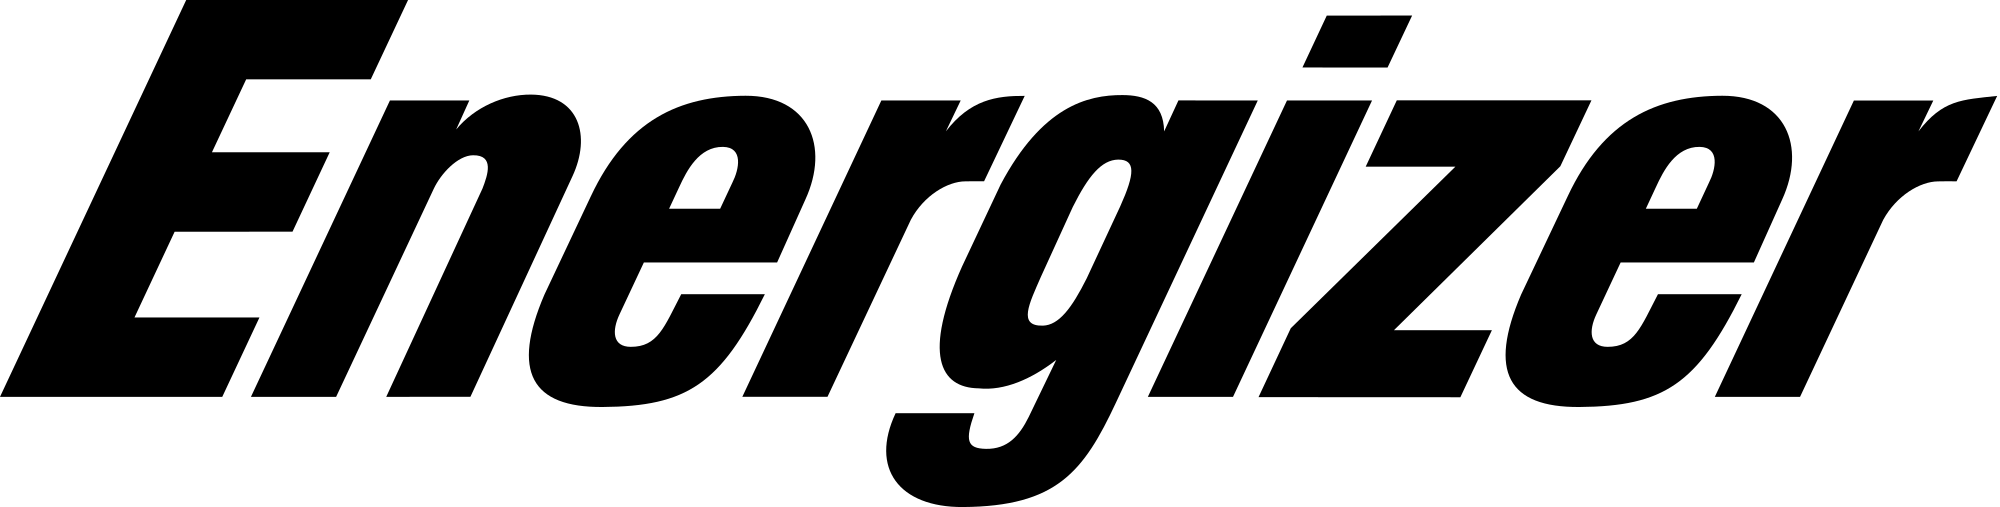 Energizer Logo PNG - 100816